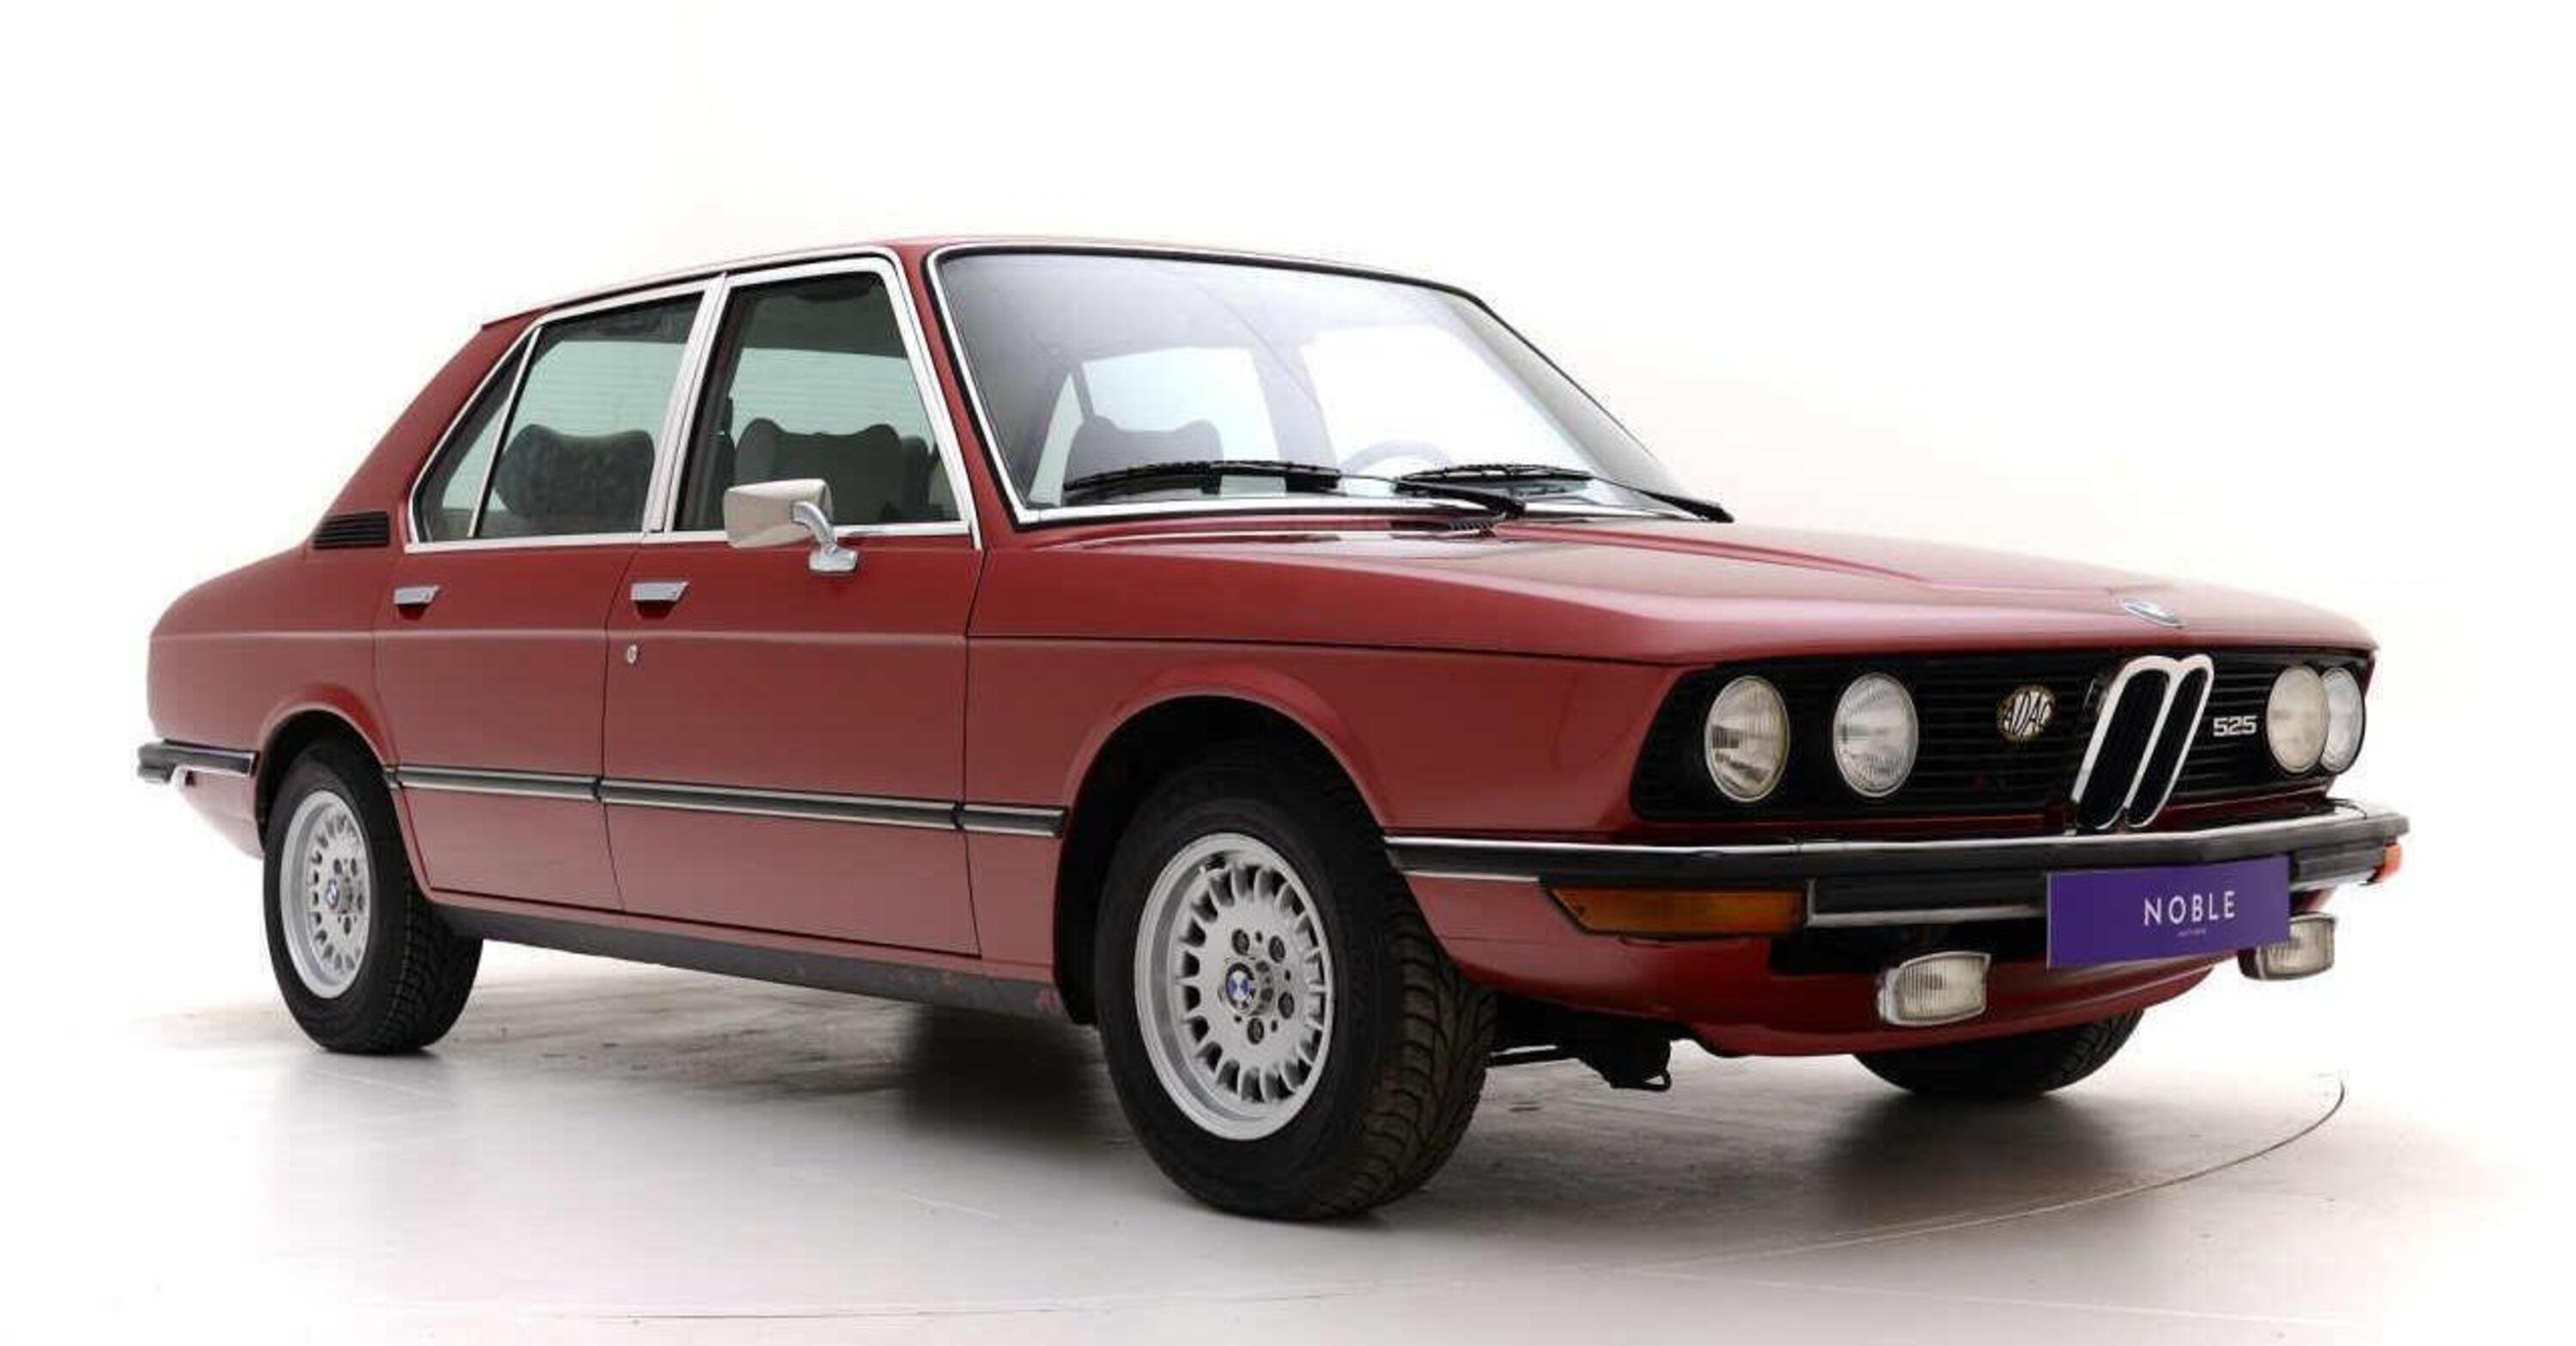 Occasione auto usata di interesse storico, BMW: la Serie 5 E12 a meno di 10K